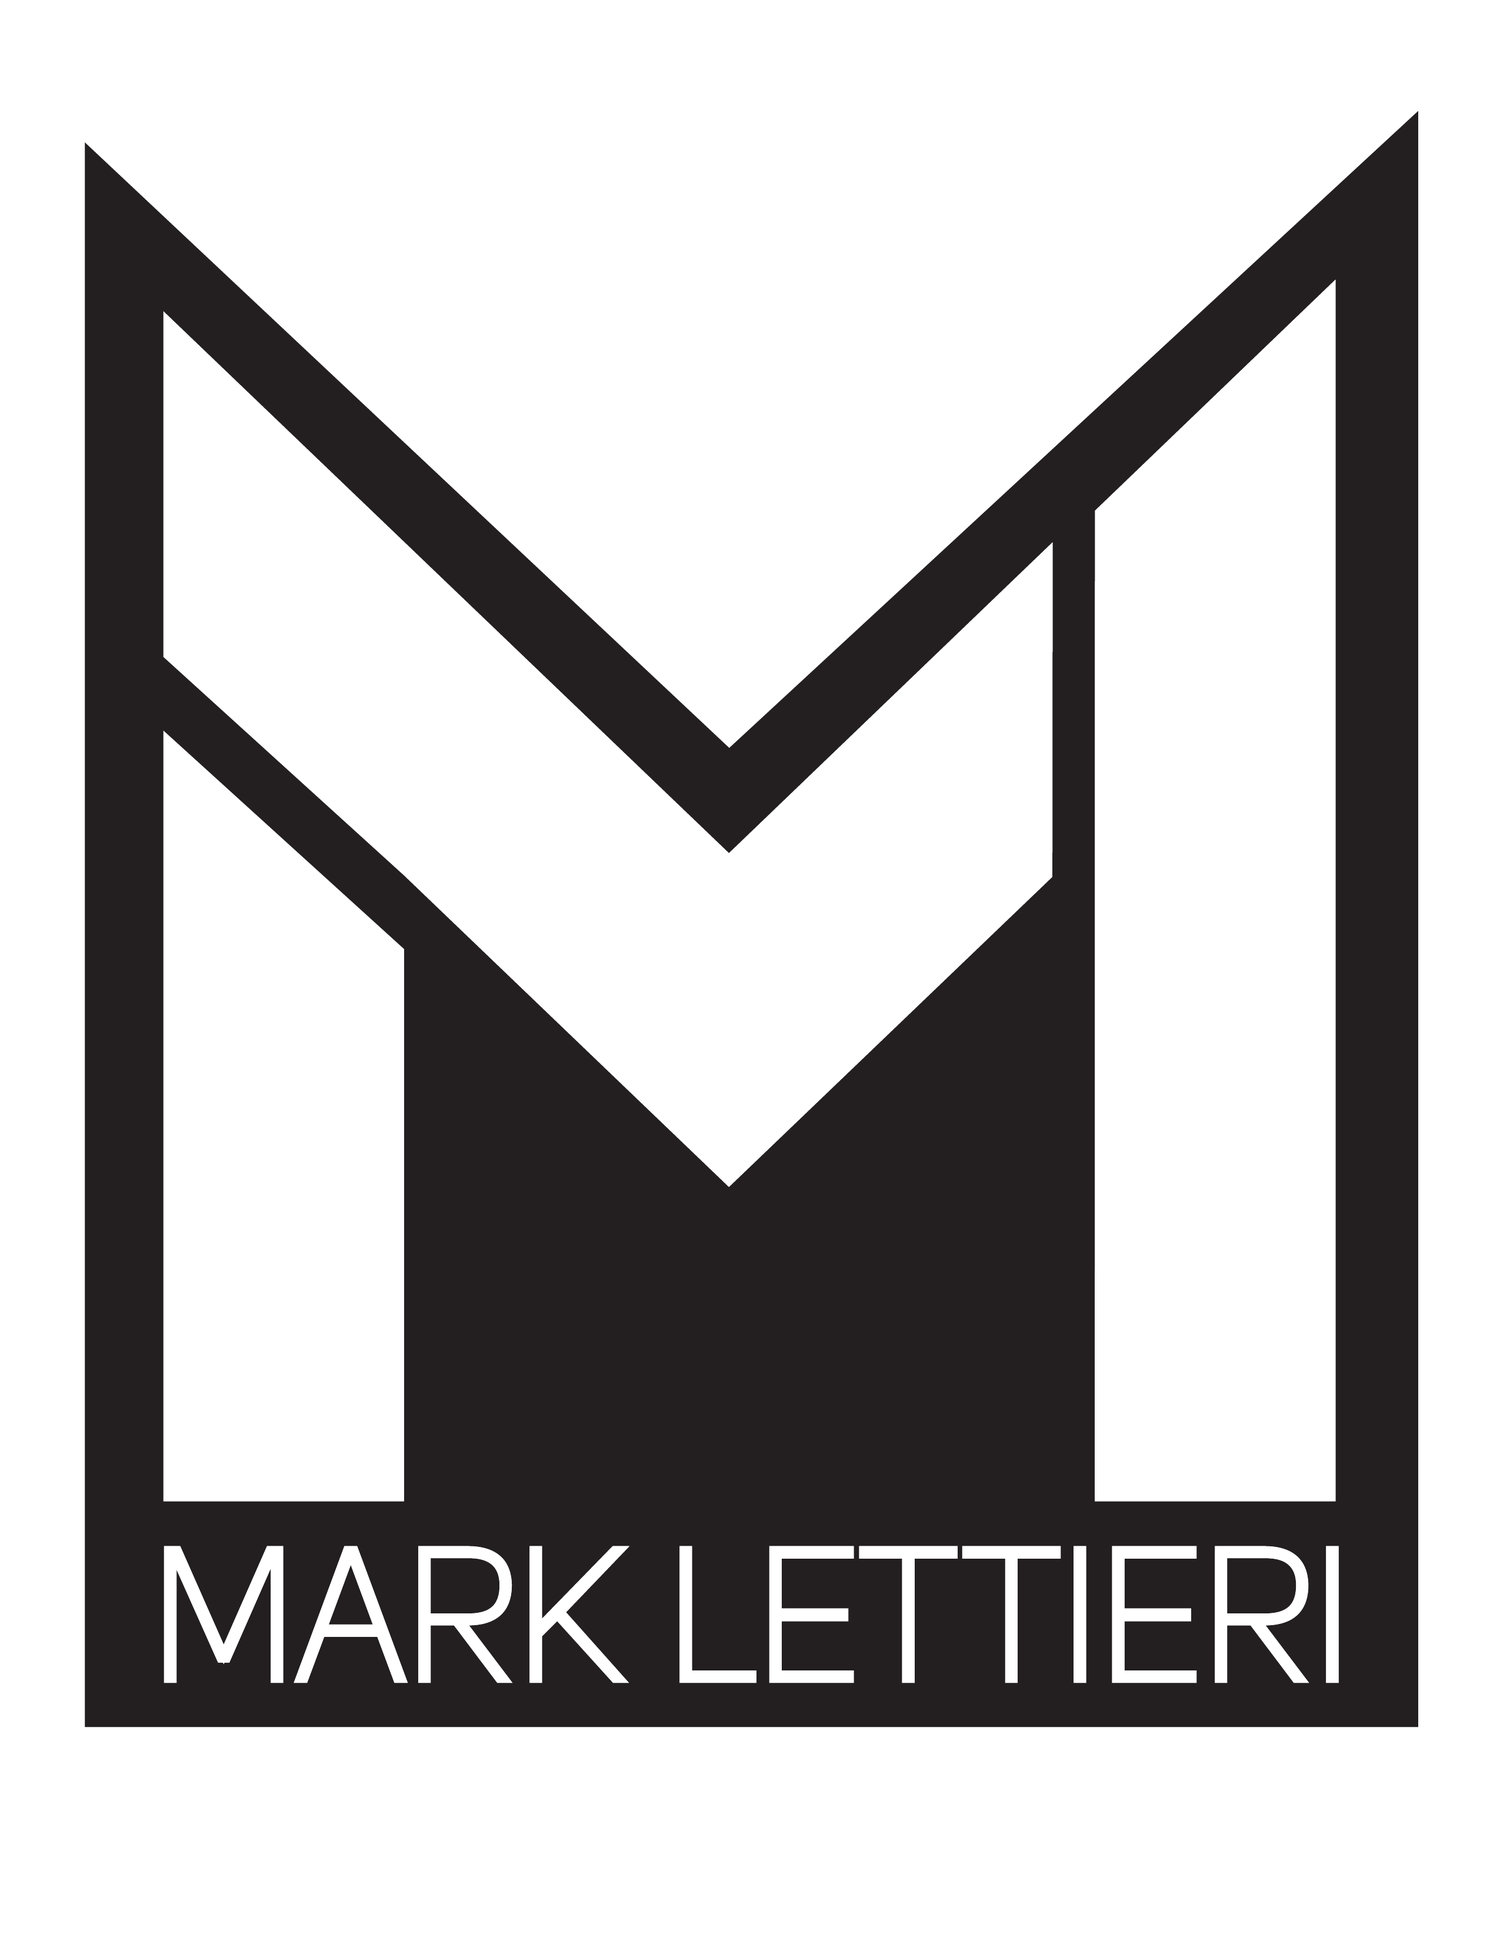 www.marklettieri.com